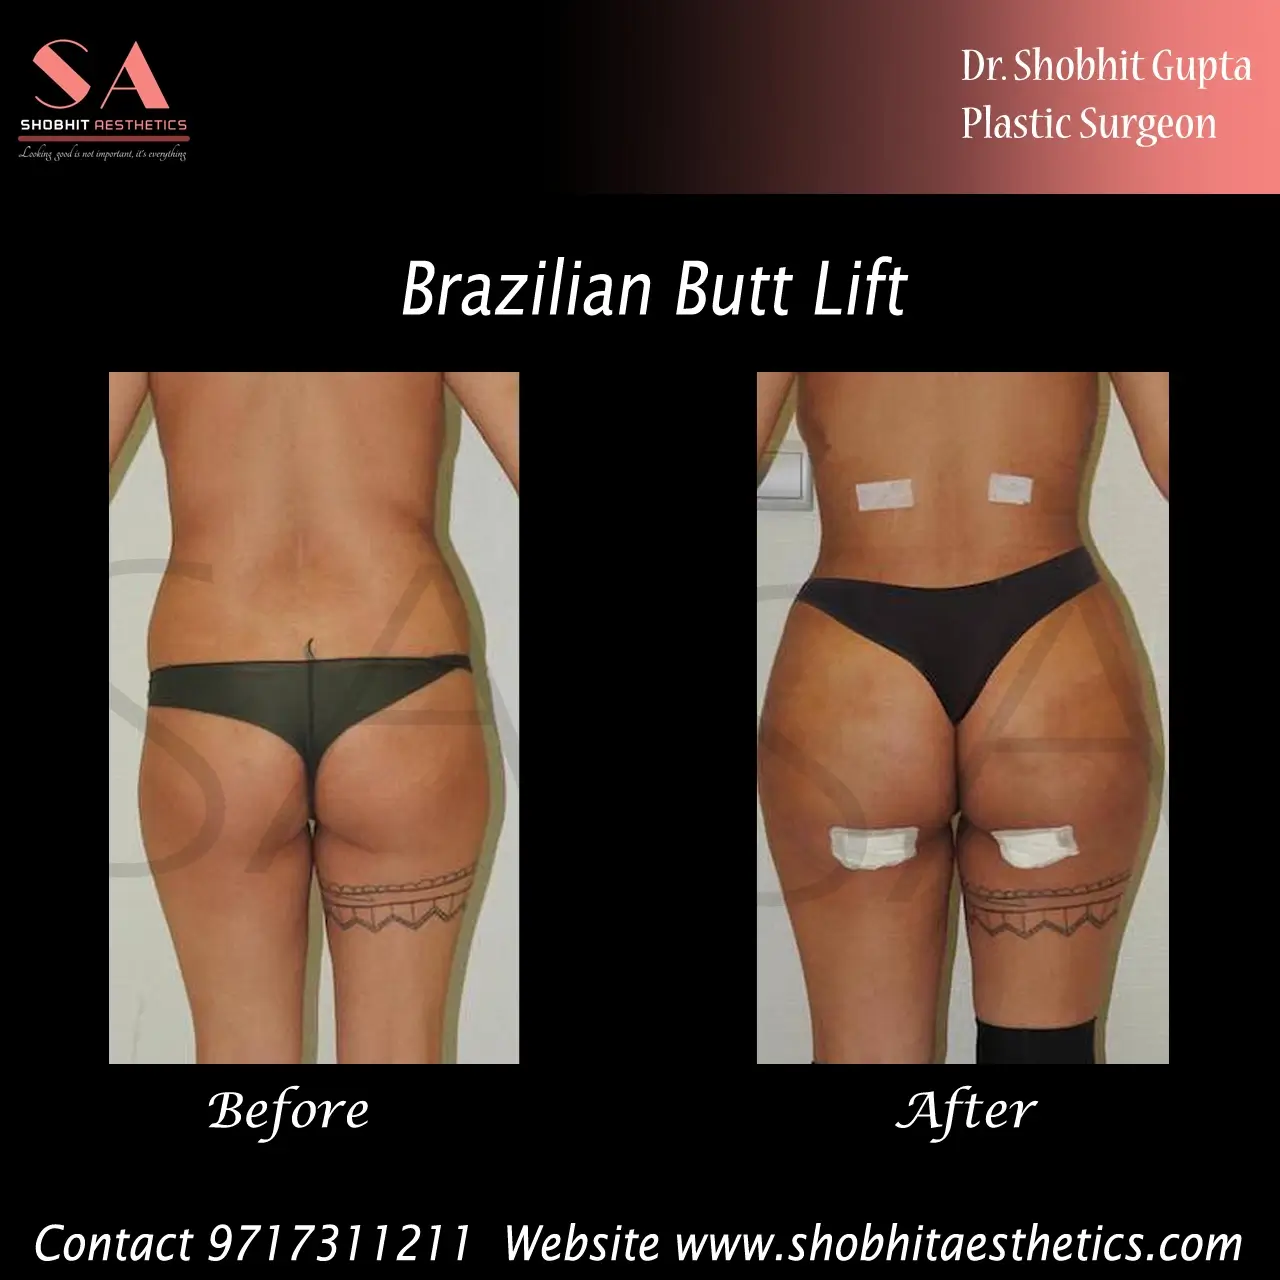 Brazilian Butt Lift Surgery